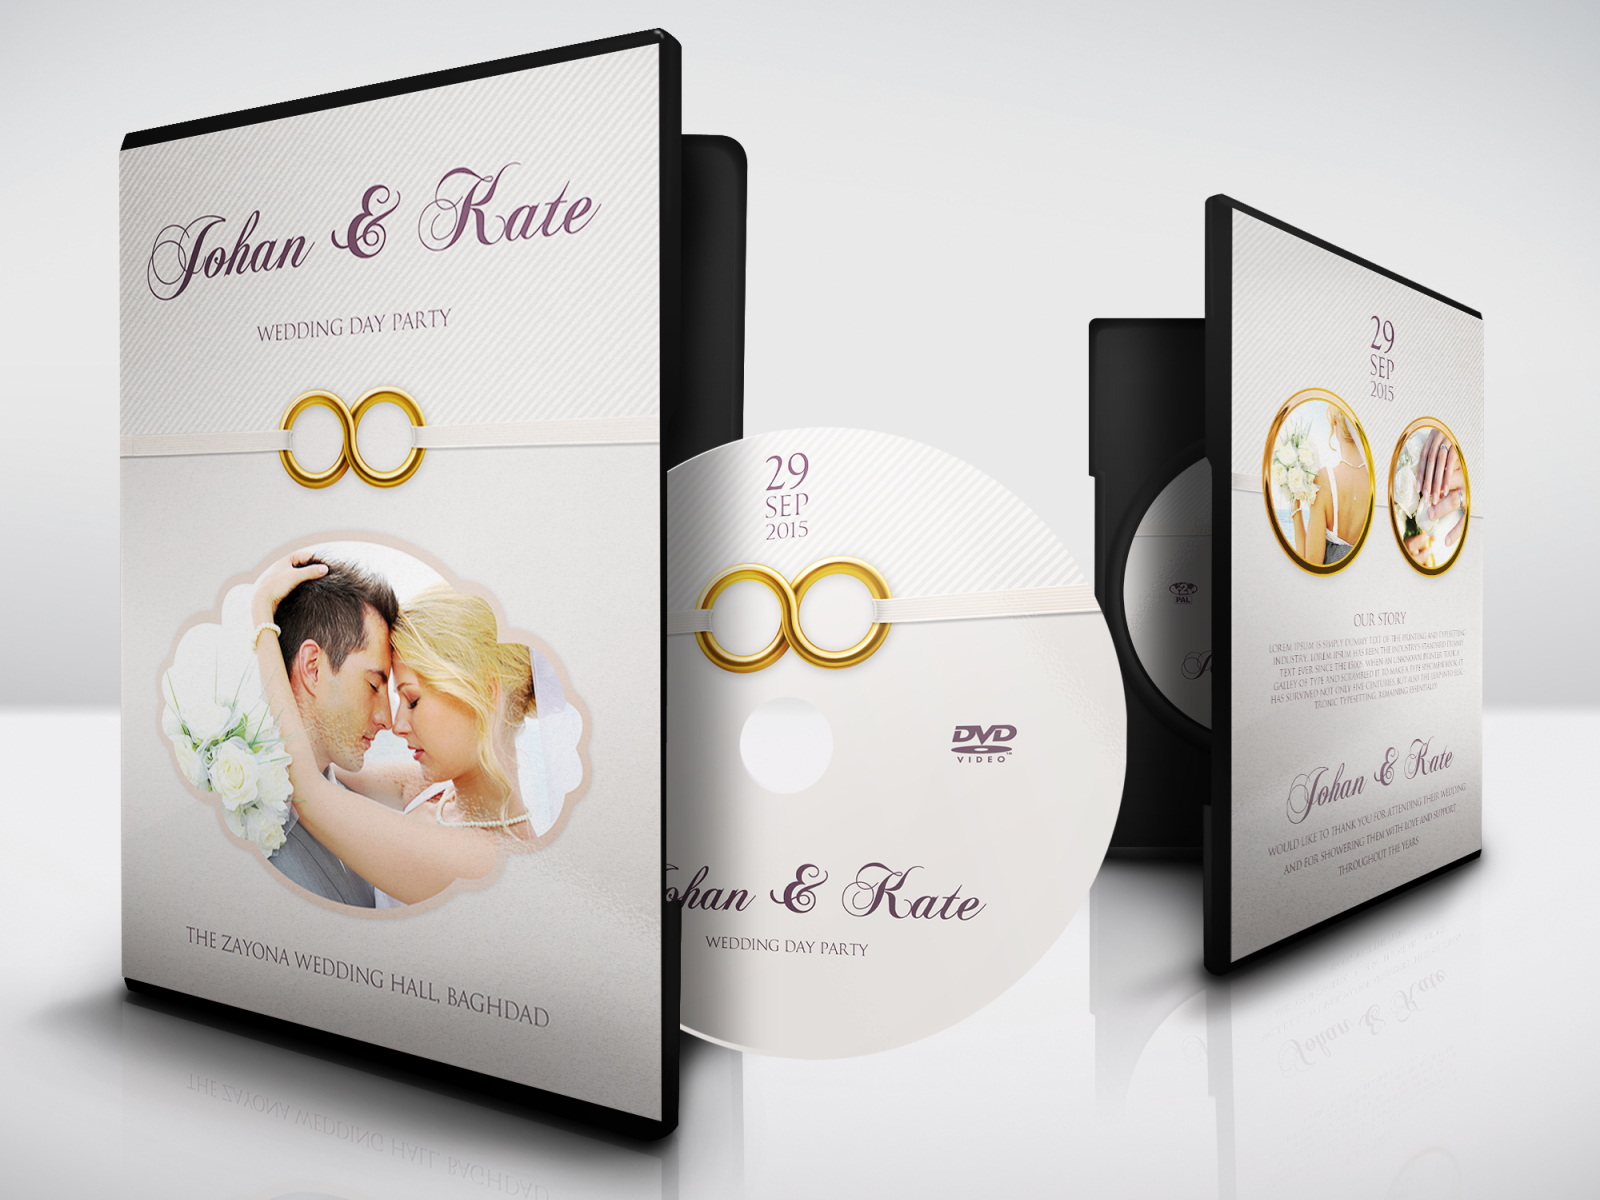 entf-hren-falsch-bungeesprung-wedding-dvd-cover-template-psd-free